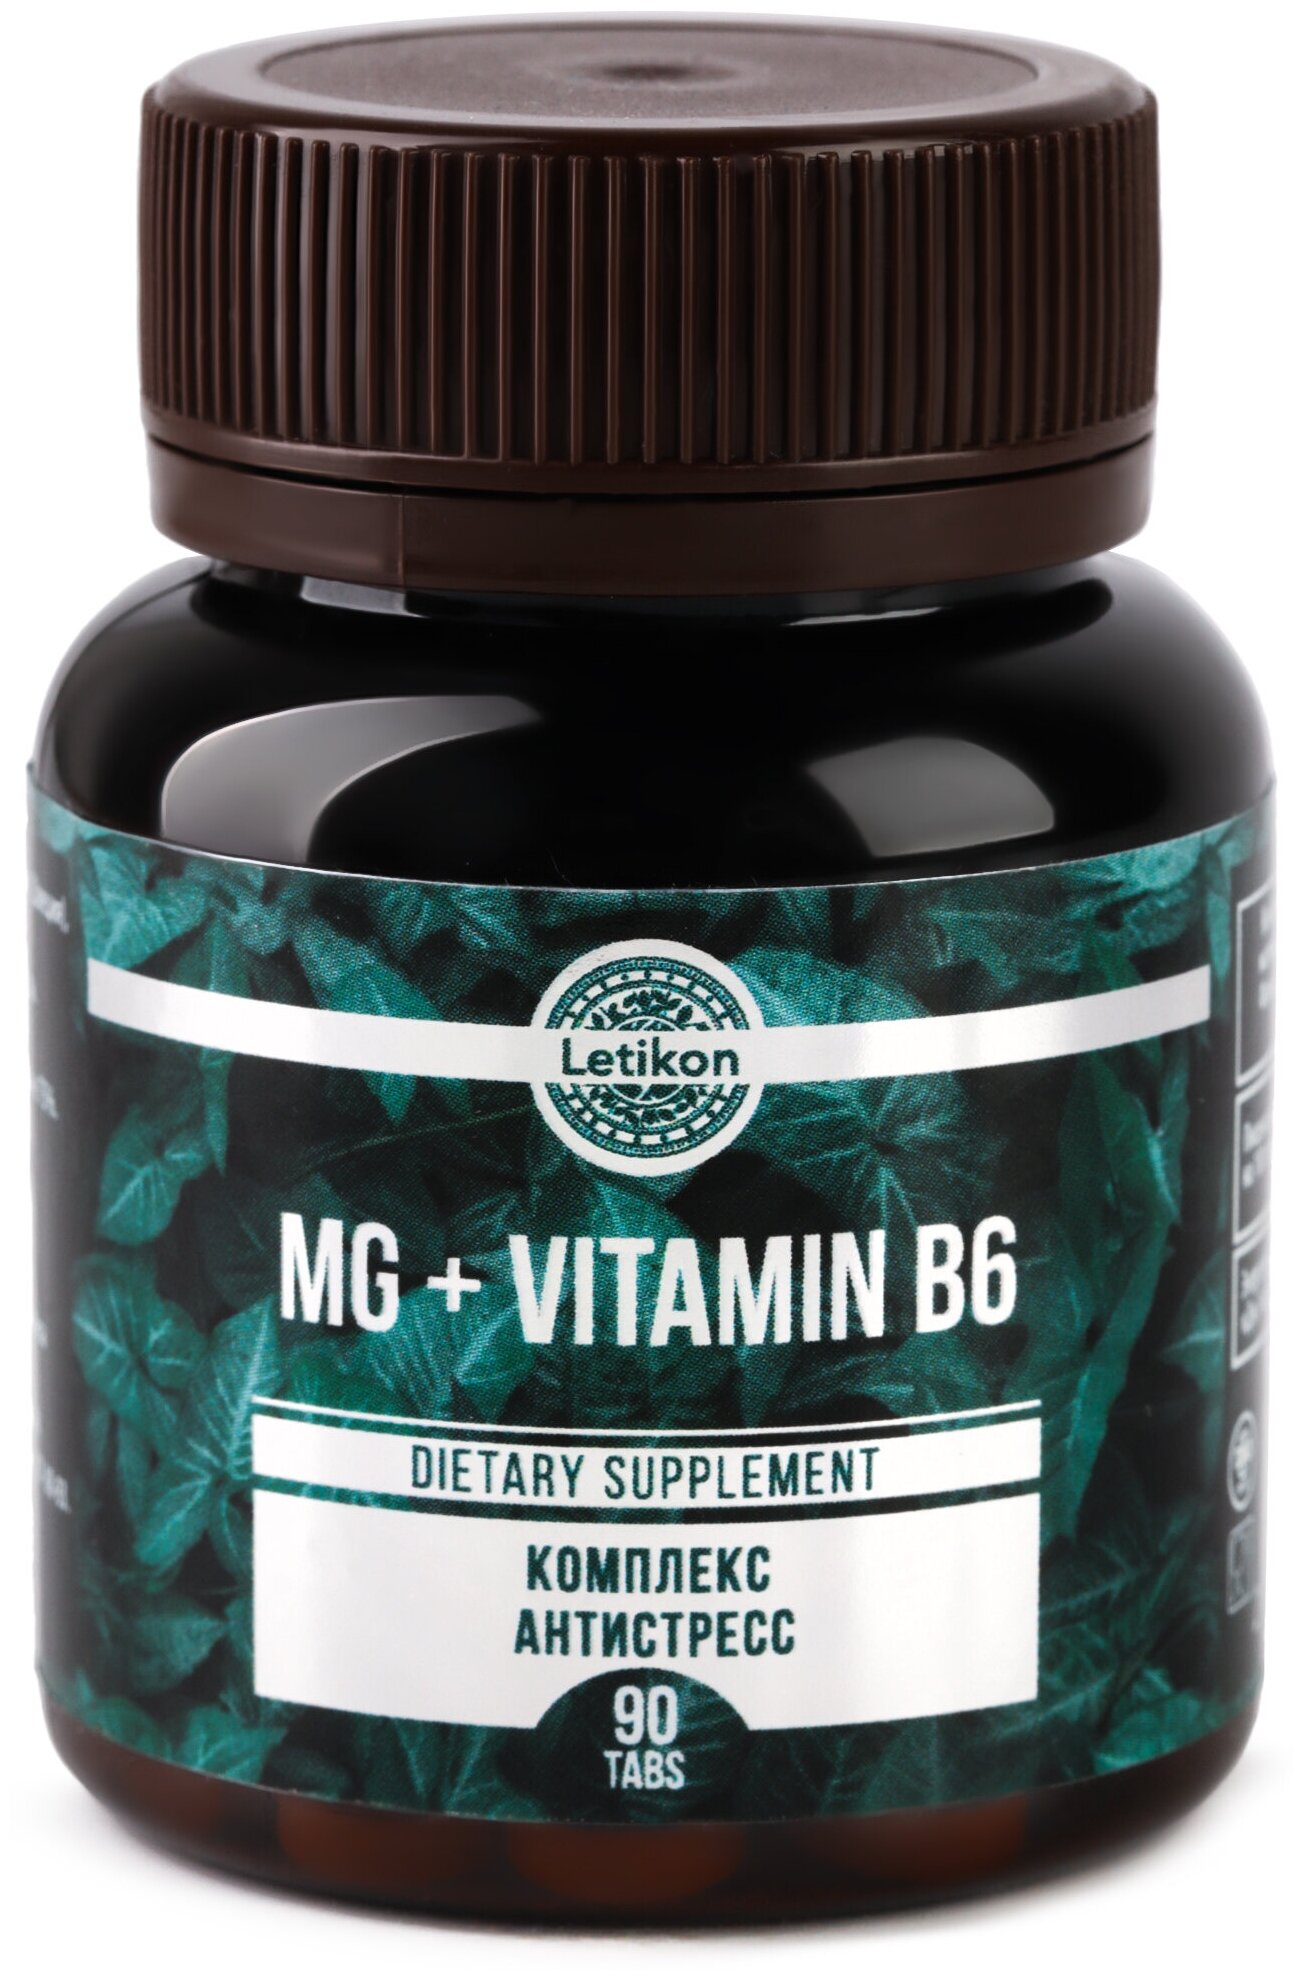 Комплексная пищевая добавка Letikon "MG + VITAMIN B6" бады и витамины для волос и кожи витамины для женщин и мужчин магний цитрат 90 таблеток